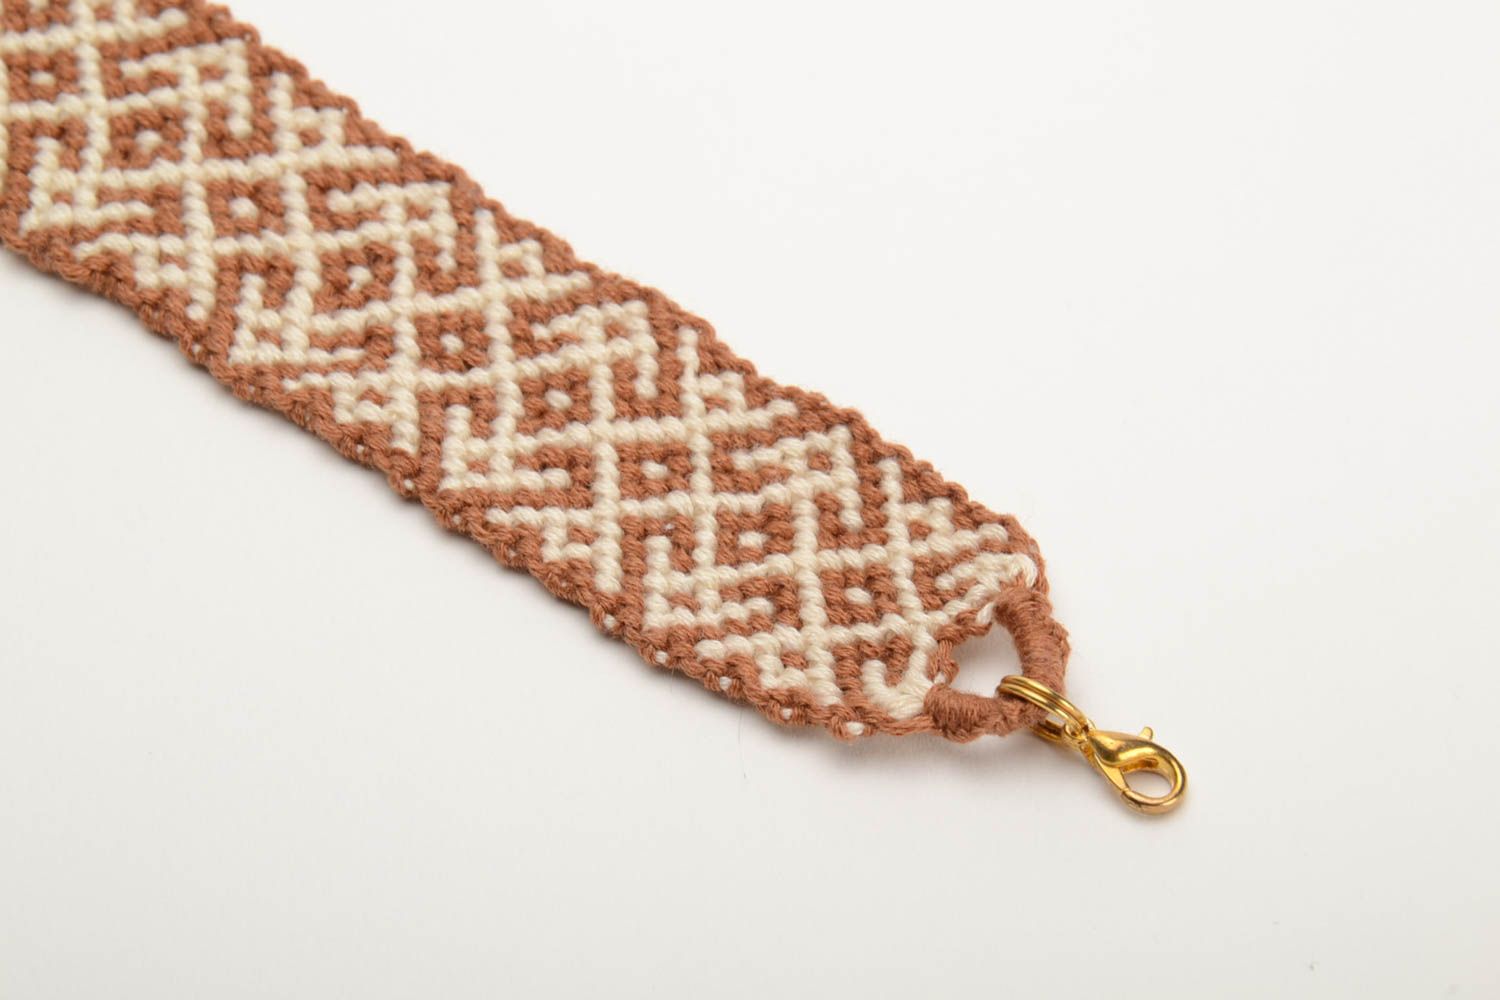 Плетеный браслет из ниток мулине ручной работы широкий красивый бело-коричневый фото 2